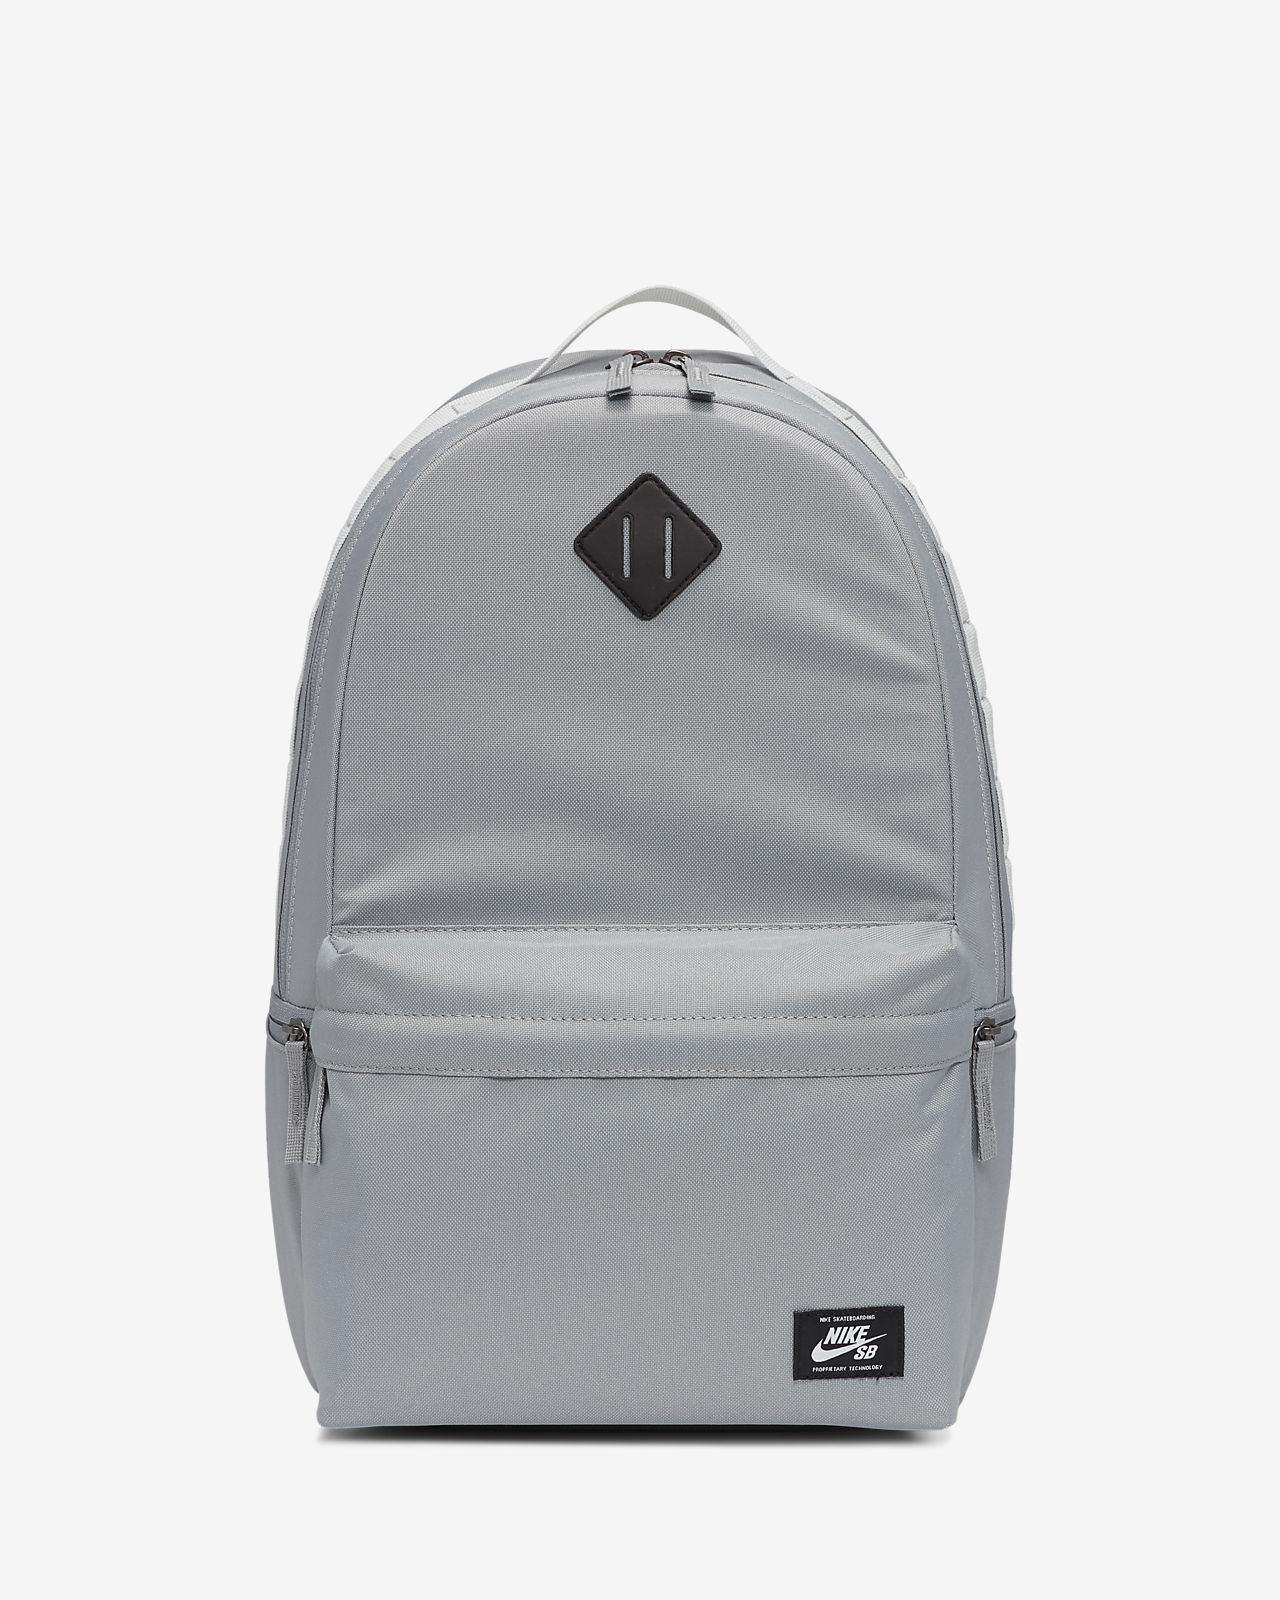 nike gray backpack